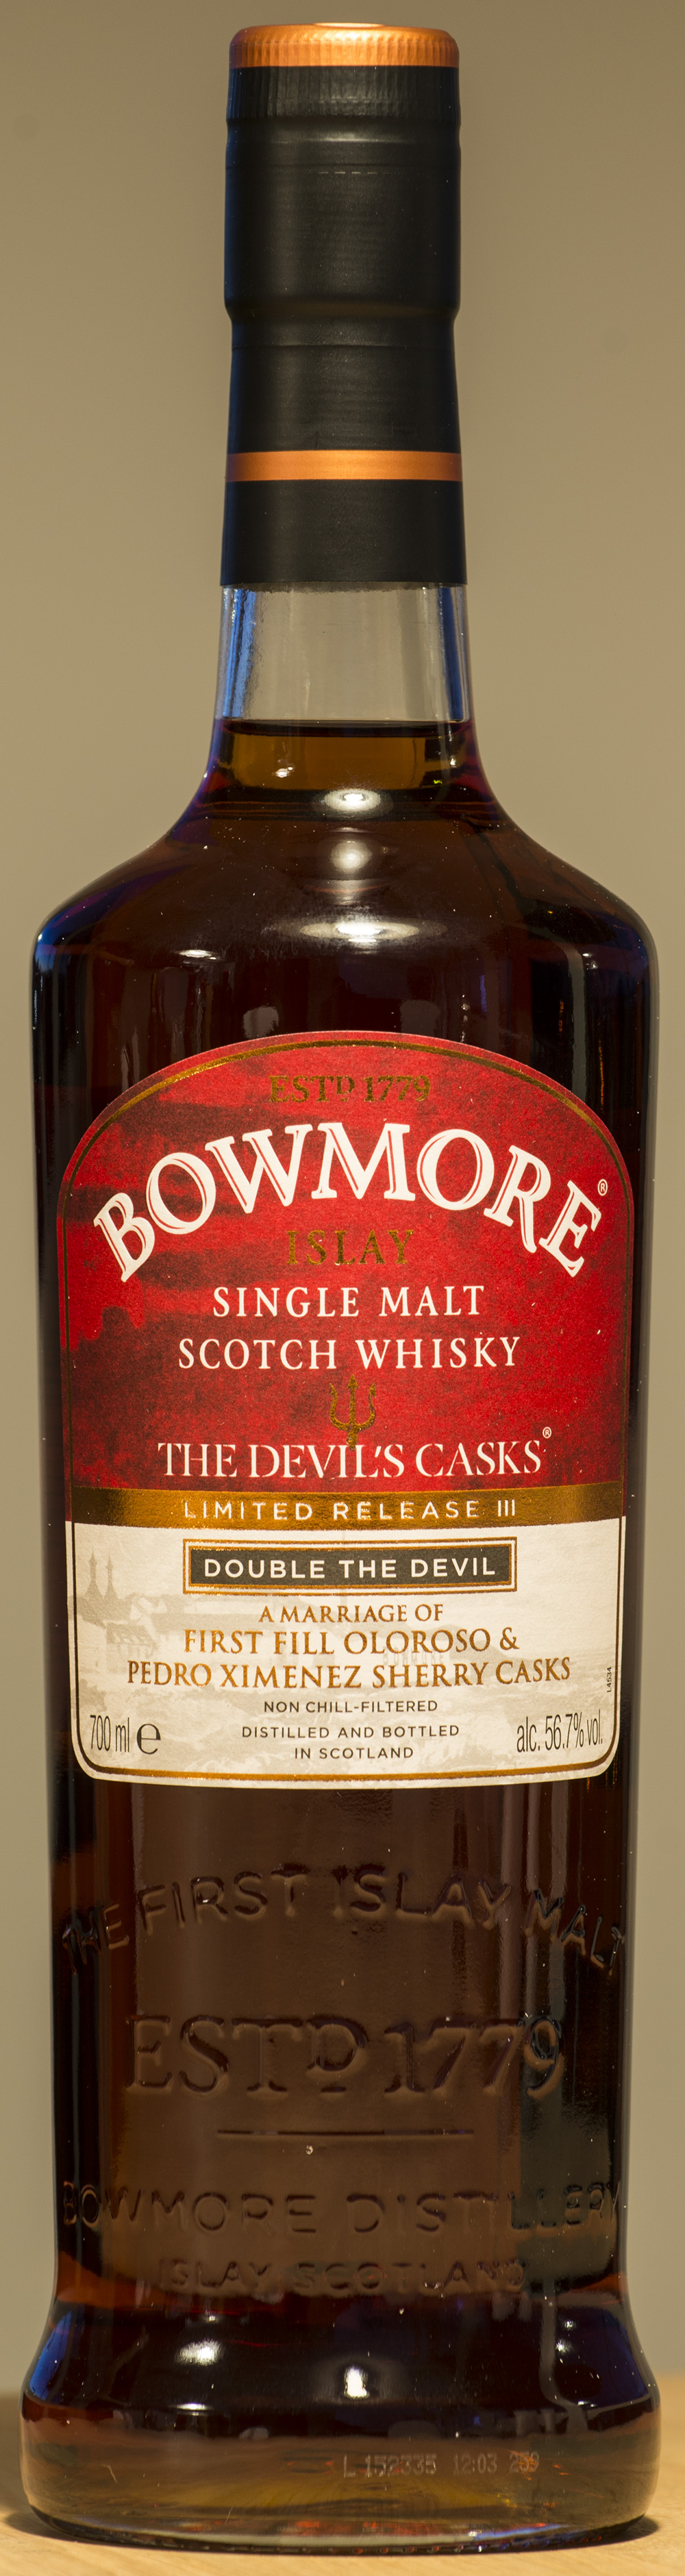 Billede: DSC_9079 - Bowmore Devils Cask Batch III - bottle front.jpg